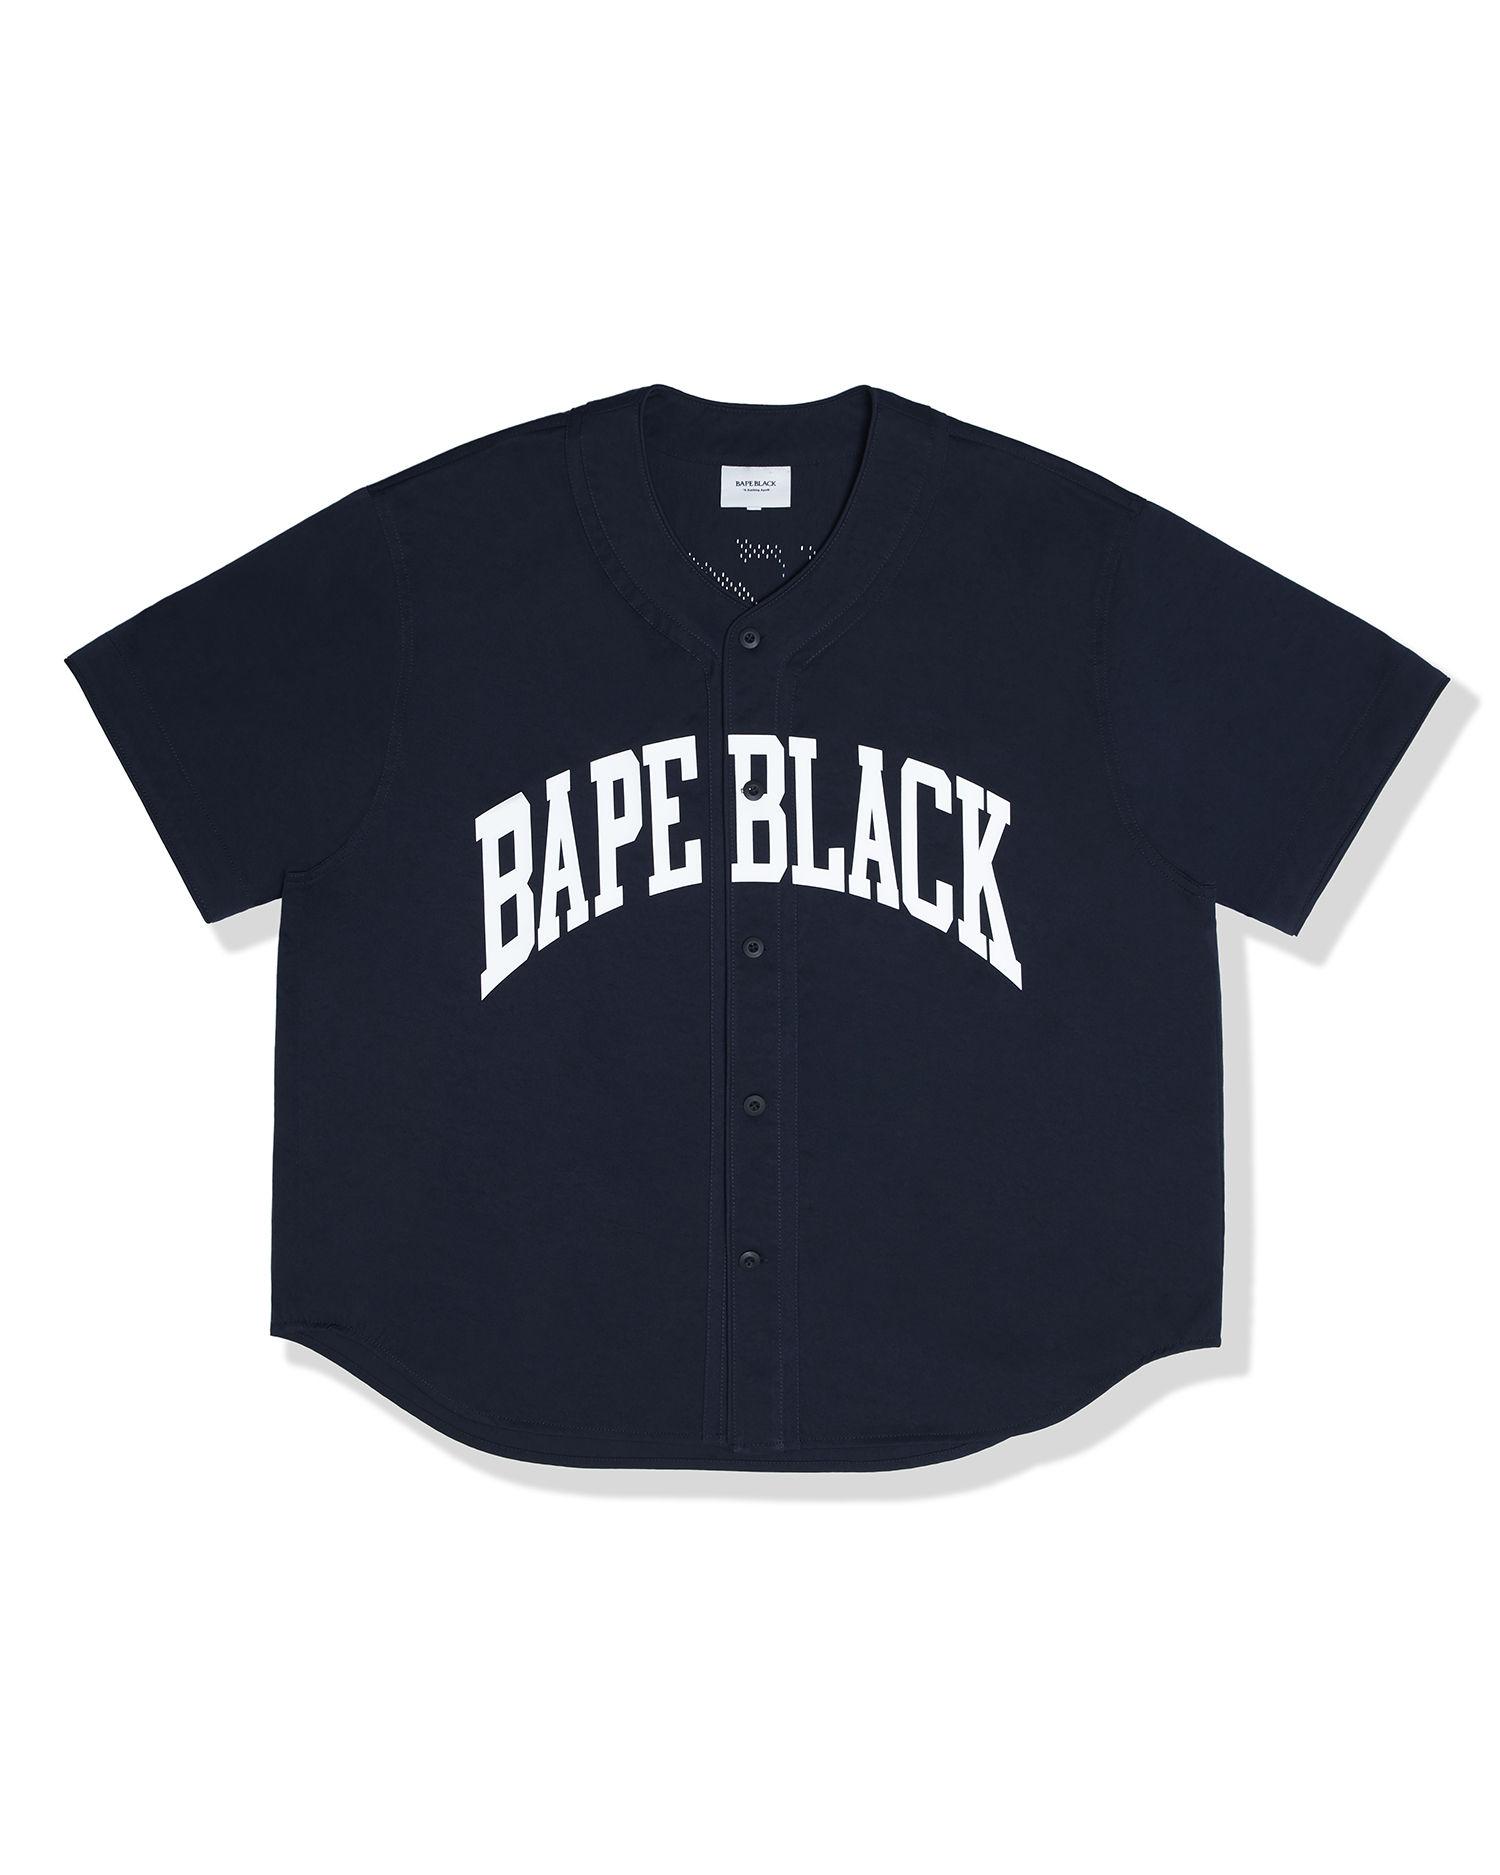 Logo short sleeve shirt by BAPE BLACK